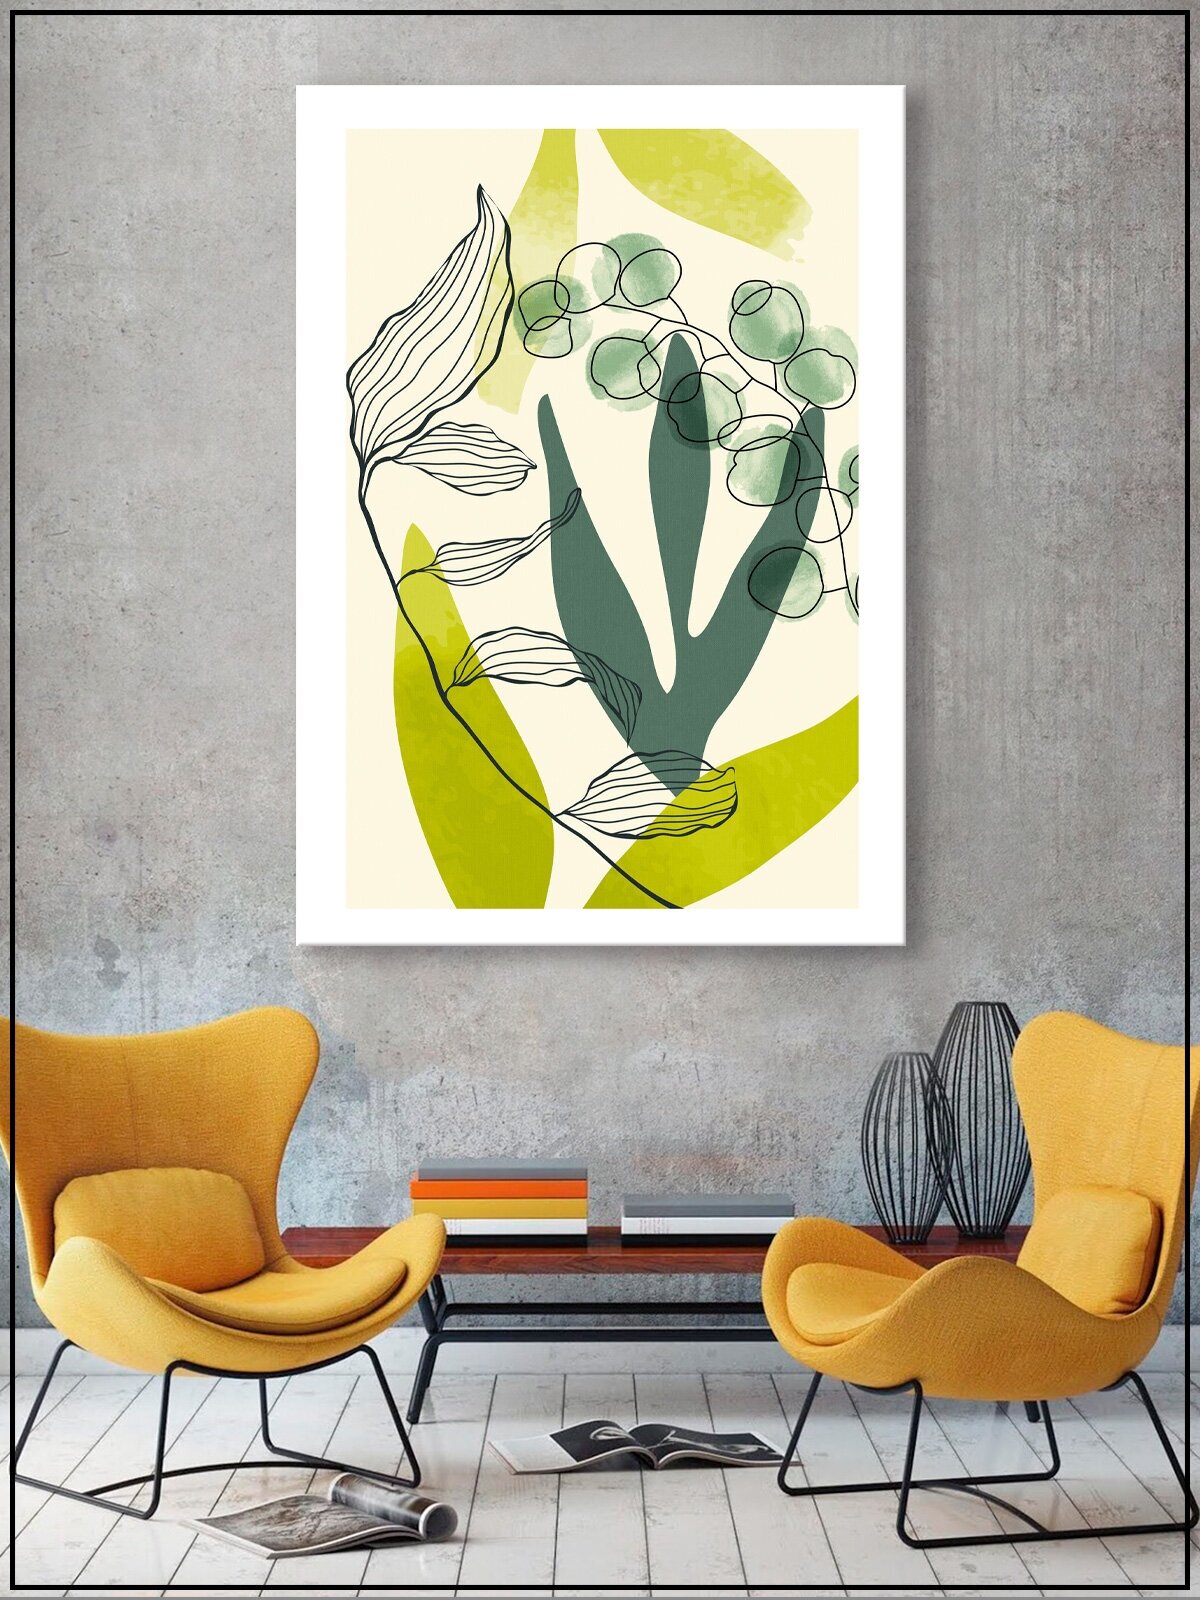 Картина для интерьера на натуральном хлопковом холсте "Абстрактные формы листья", 30*40см, холст на подрамнике, картина в подарок